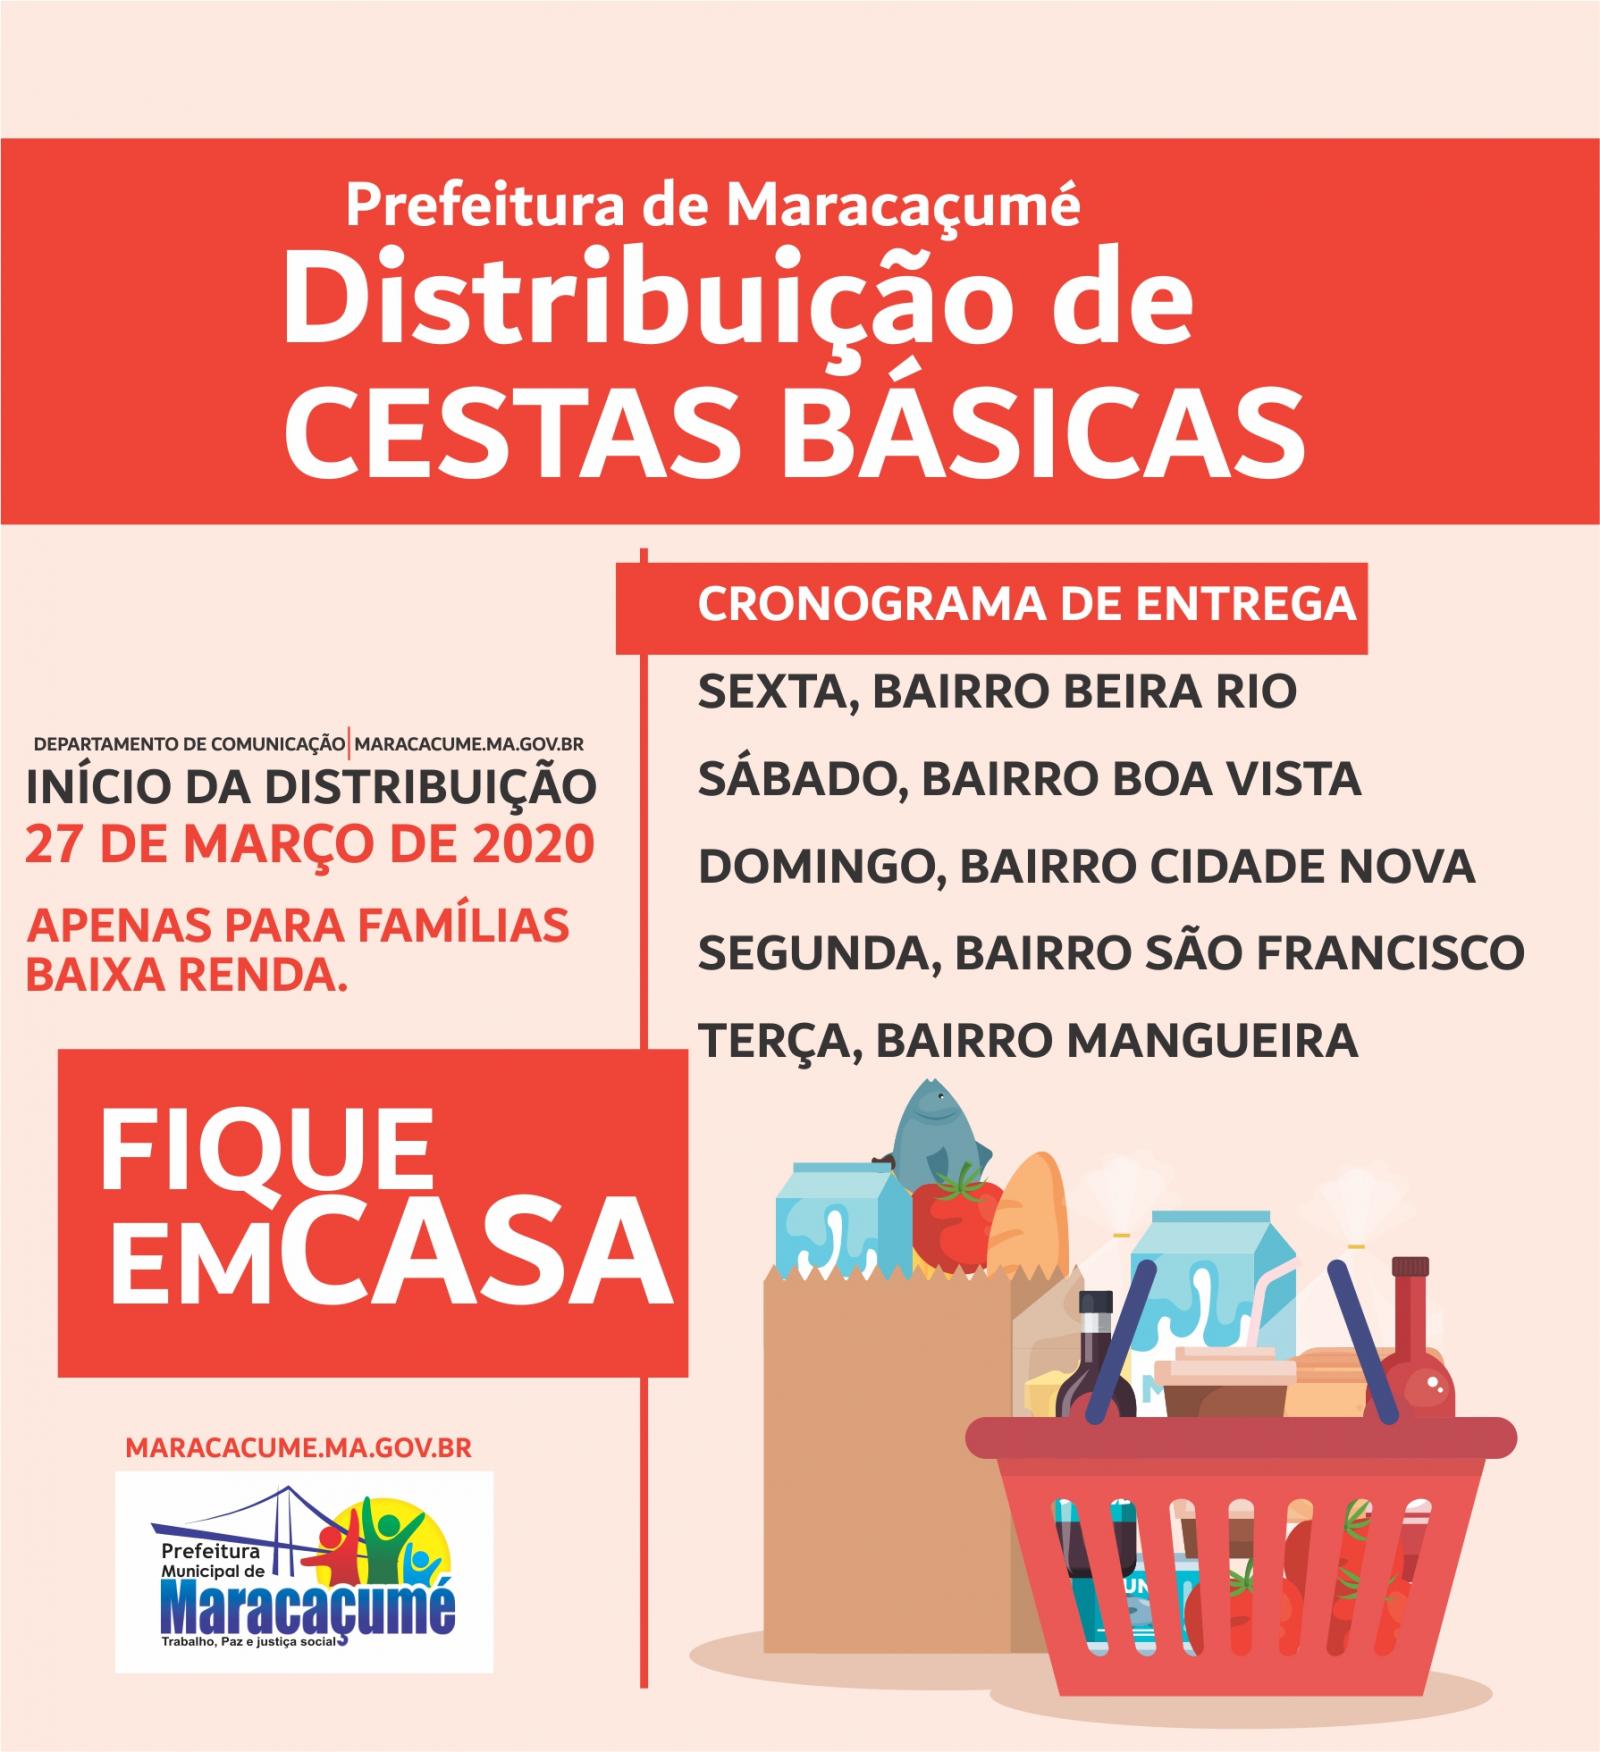 Prefeitura de Maracaçumé vai cancelar Dia das Mães e São João para investir em cestas básicas para as famílias baixa renda